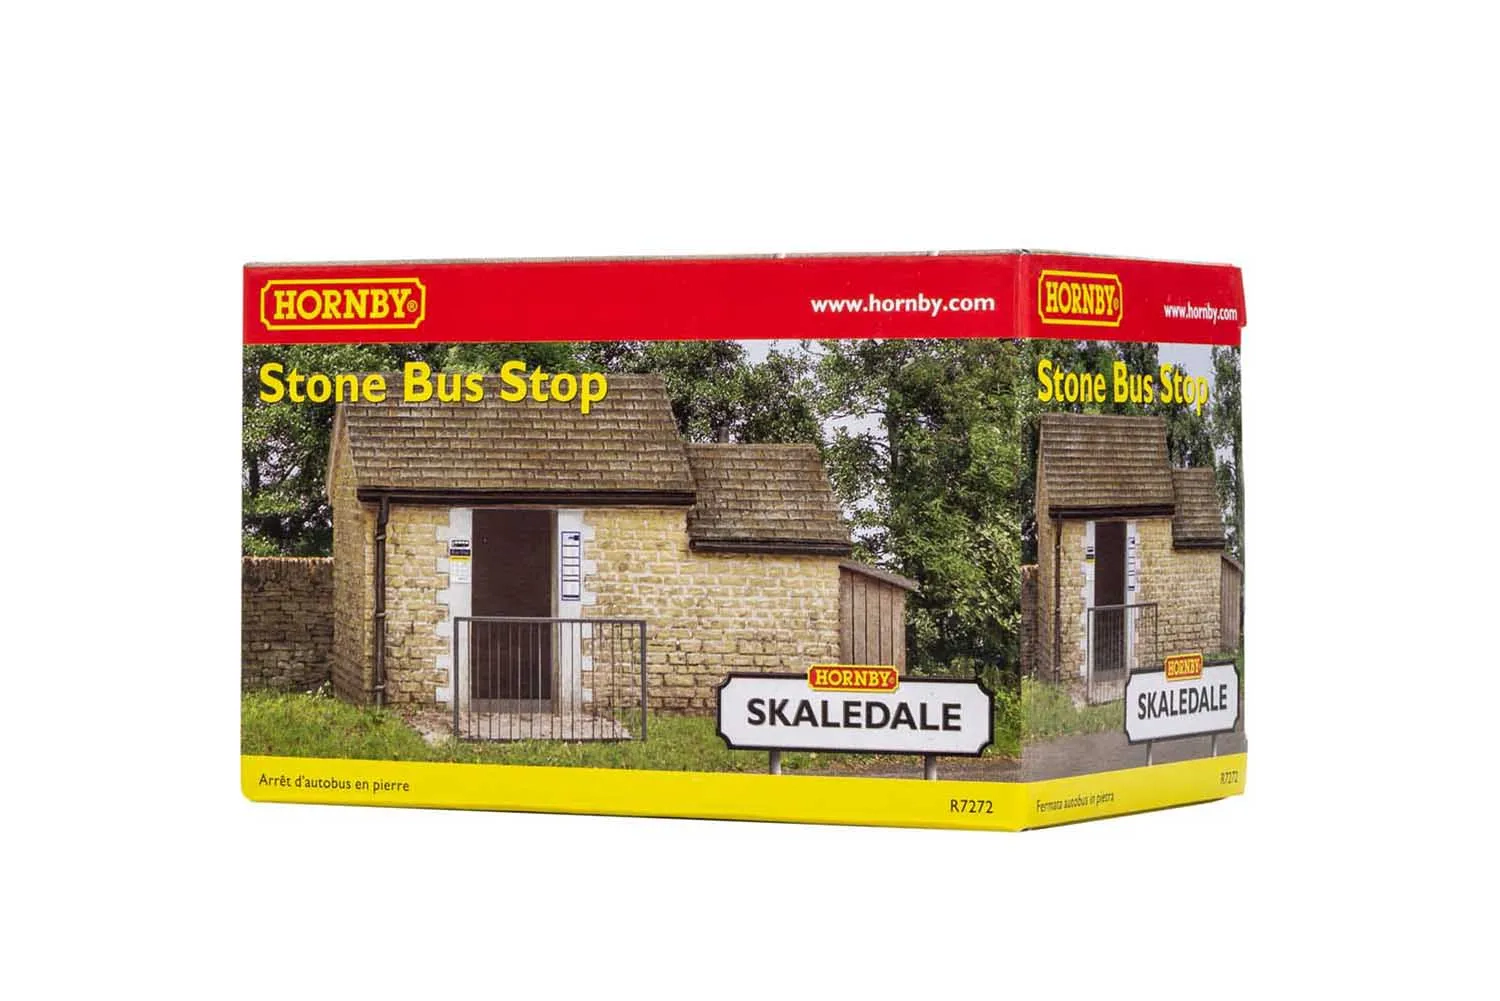 Stone Bus Stop